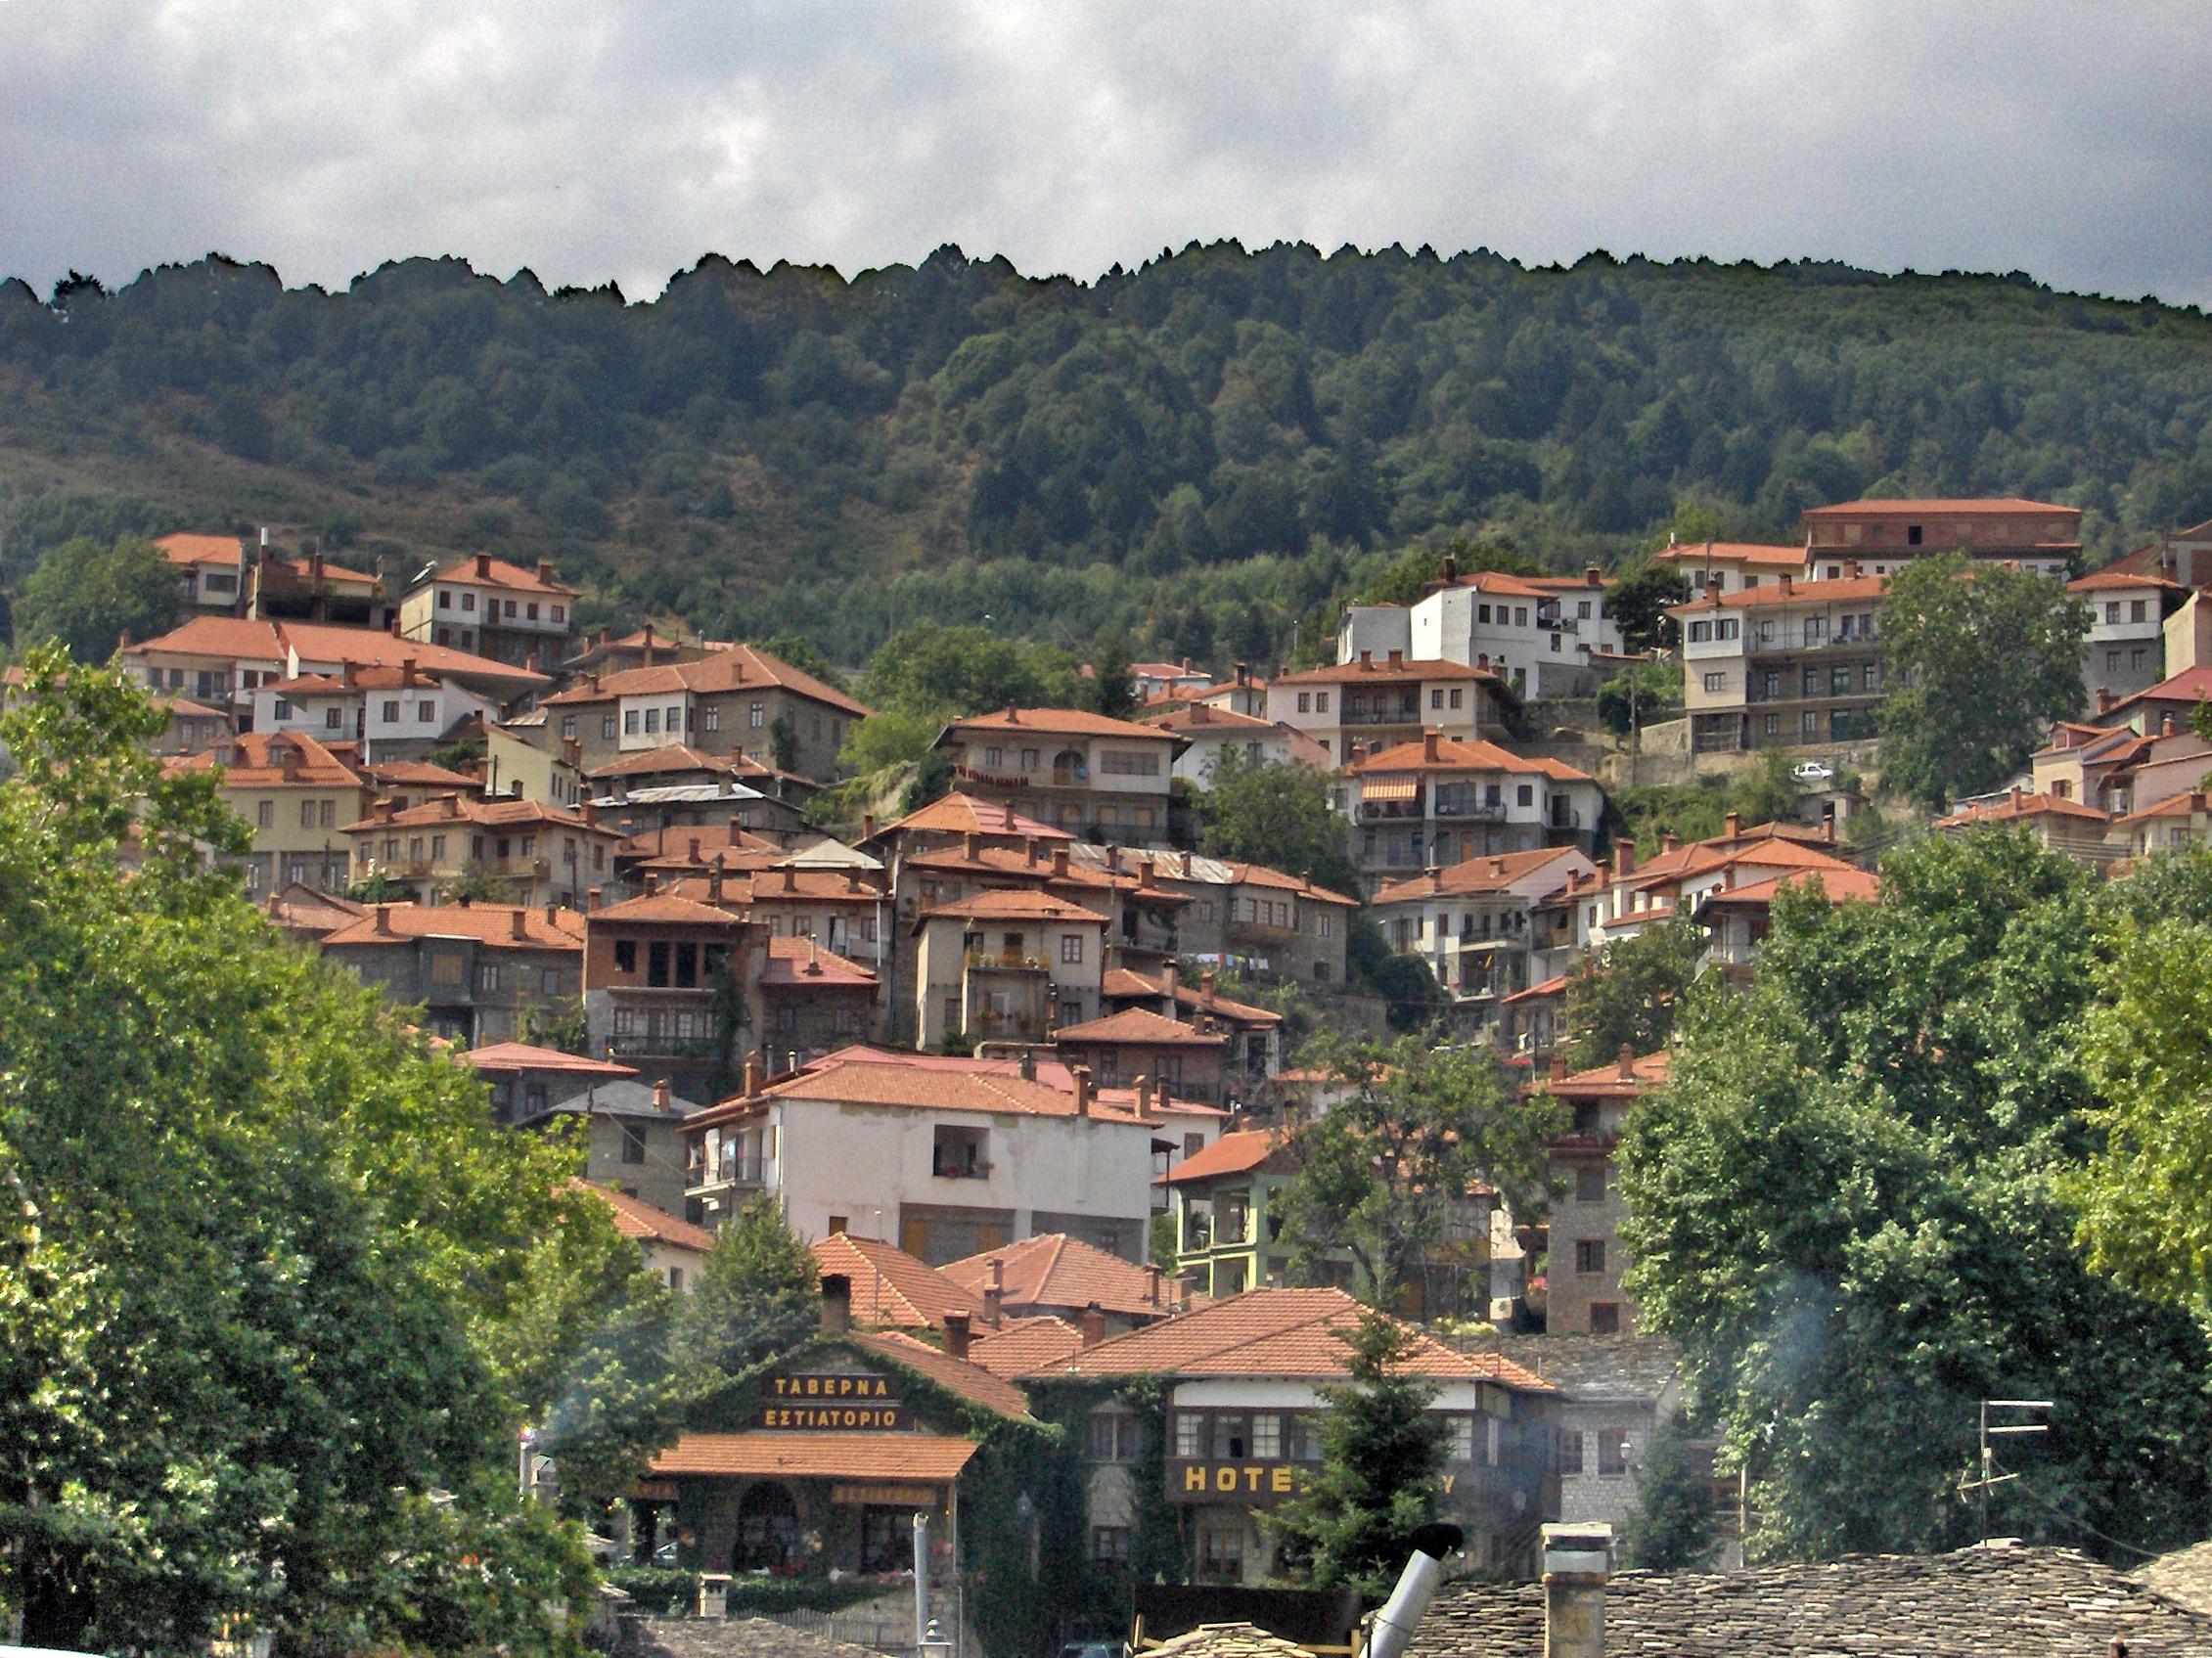 Πανοραμική φωτογραφία του χωριού σε ένα καταπράσινο περιβάλλον μετσοβο αξιοθεατα 